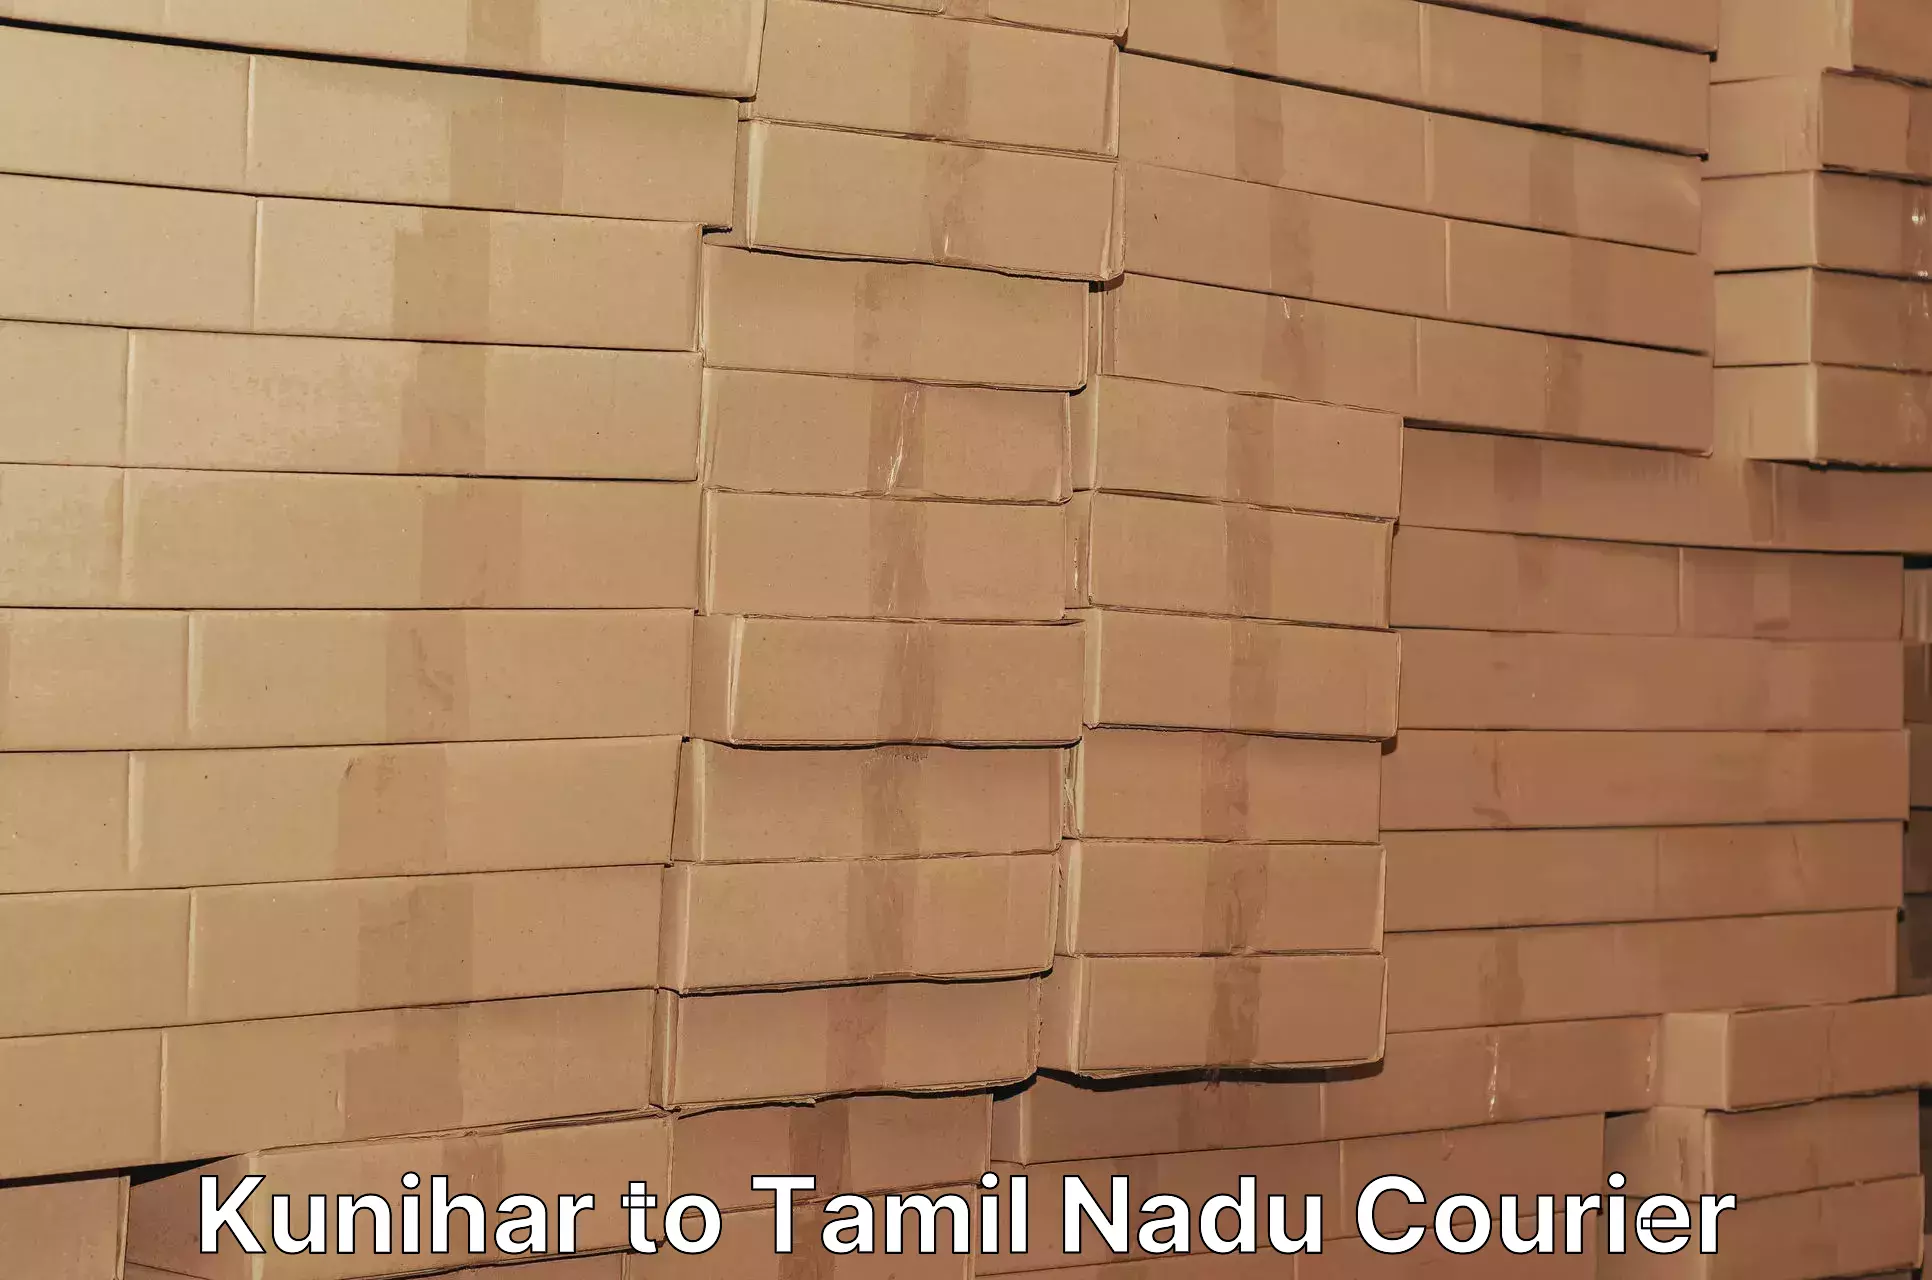 Affordable parcel service Kunihar to Tamil Nadu